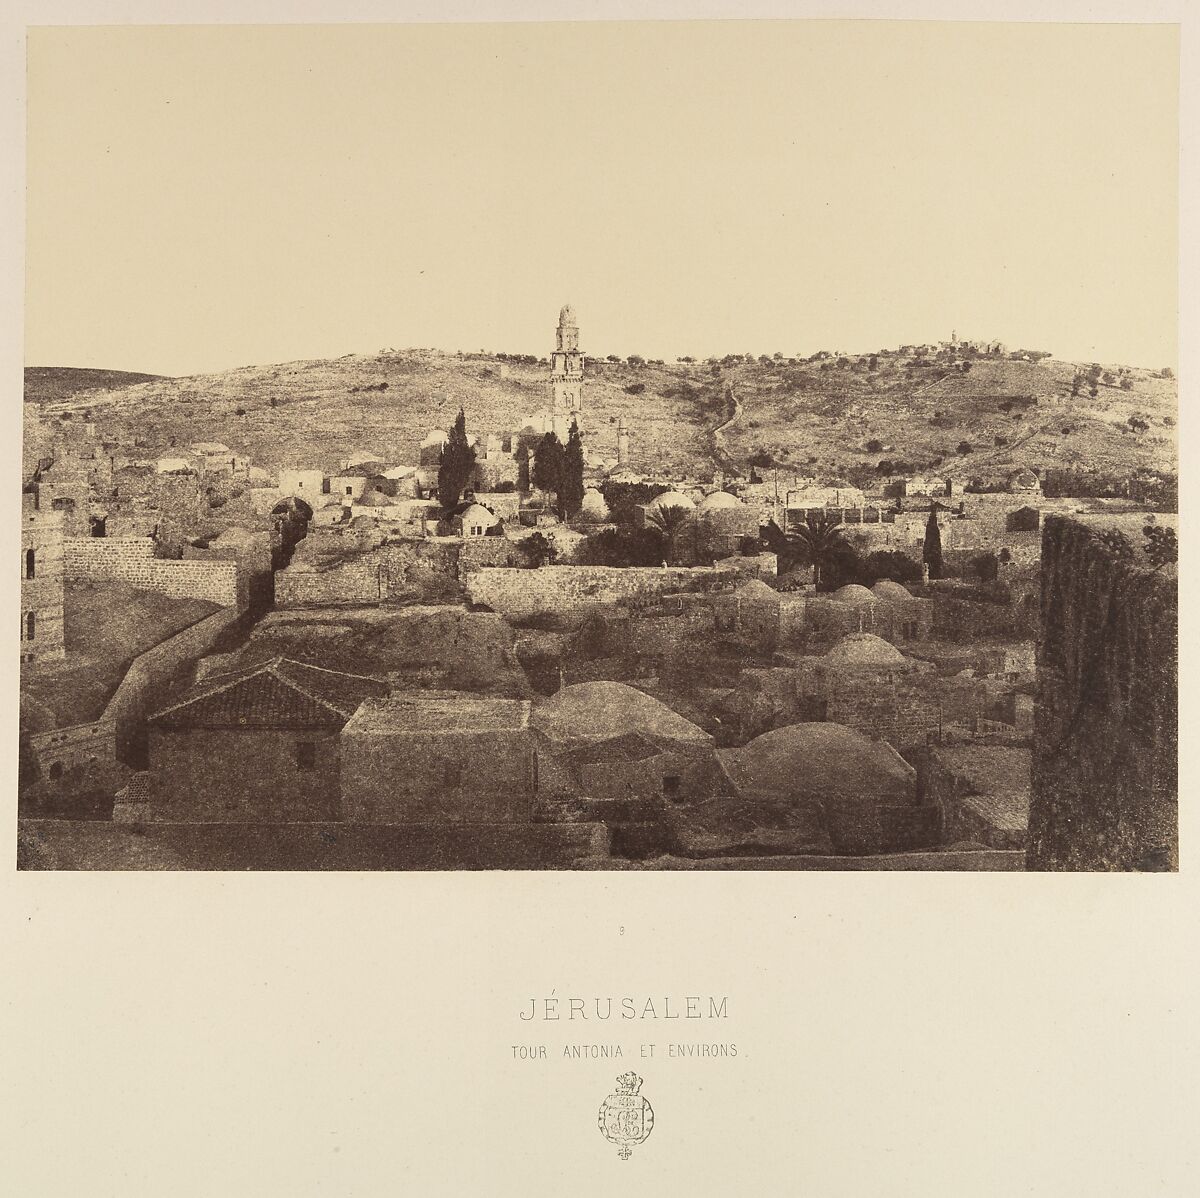 Jérusalem. Tour Antonia et Environs, Louis de Clercq (French, 1837–1901), Albumen silver print from paper negative 